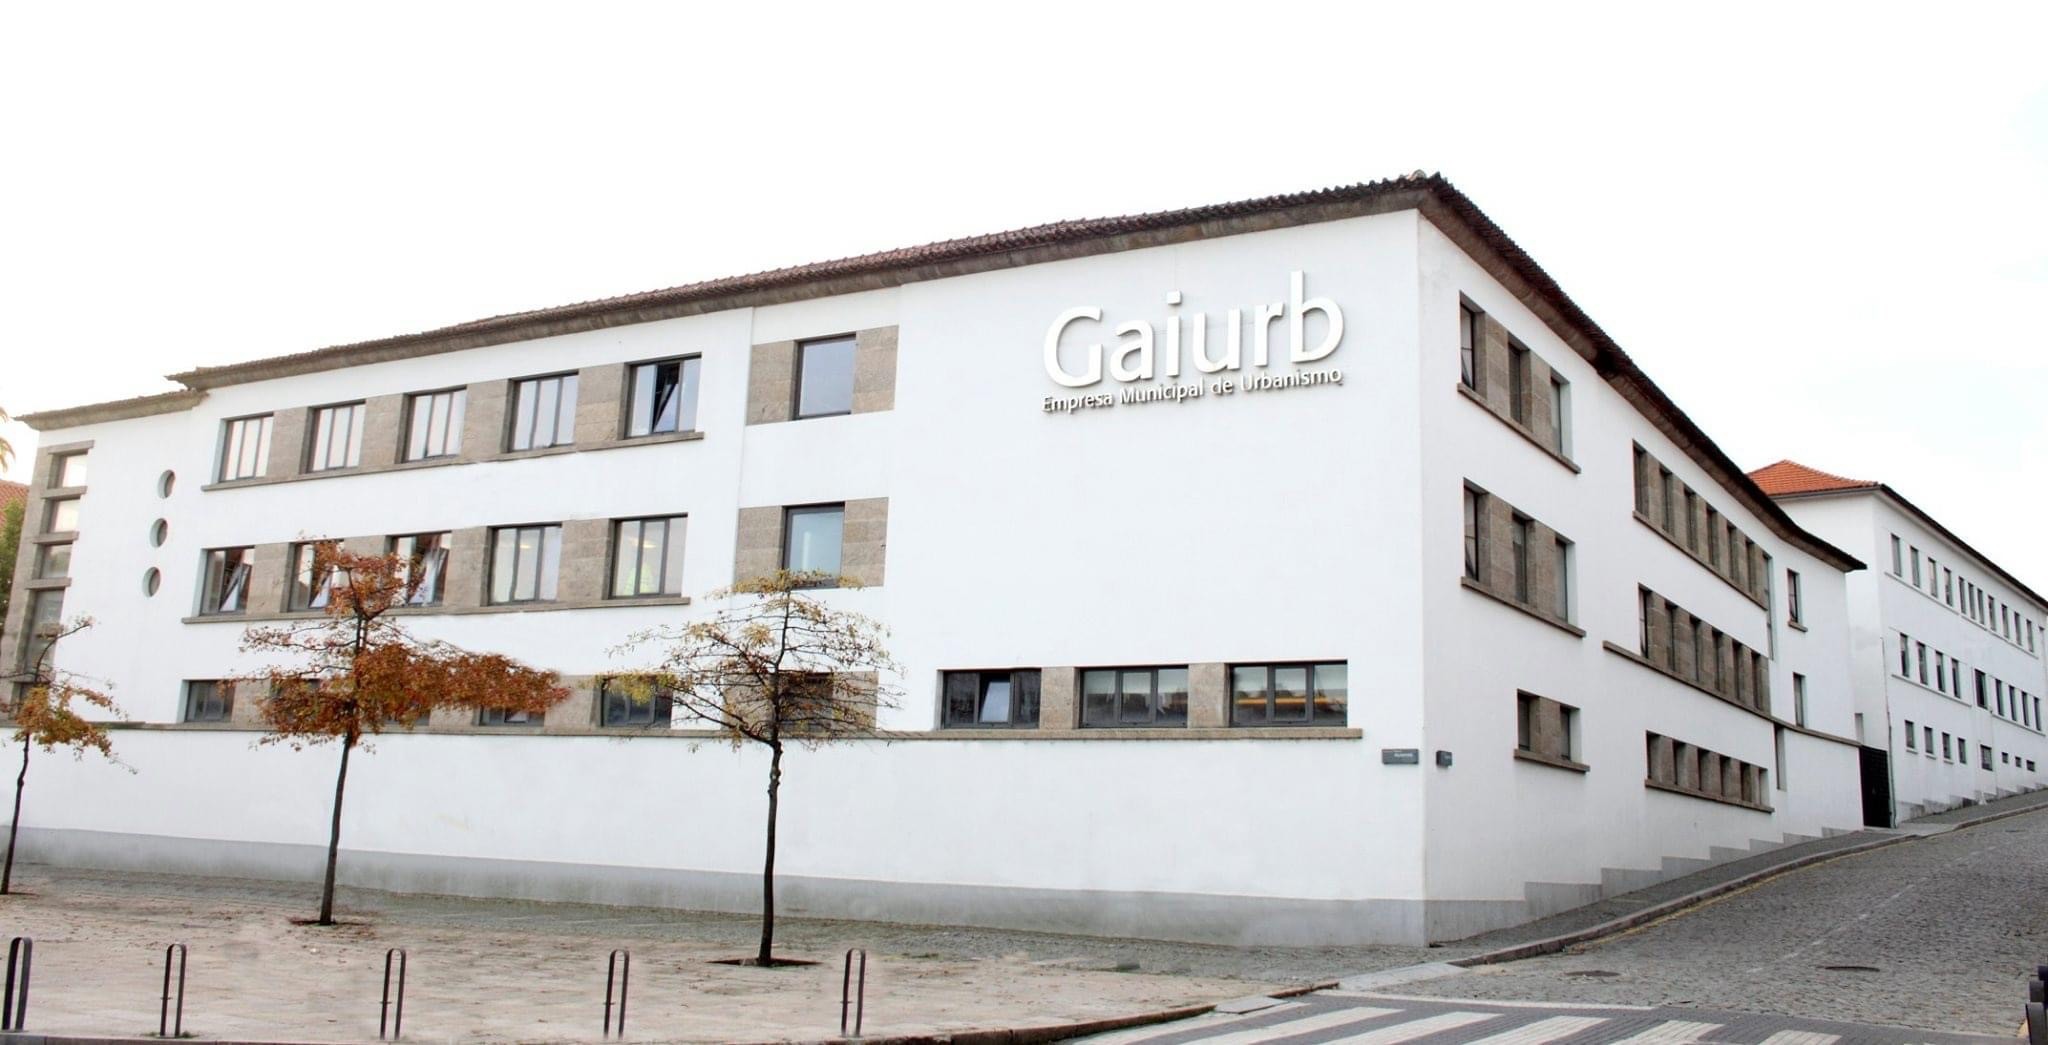 Gaiurb lança medidas de apoio às empresas de Gaia